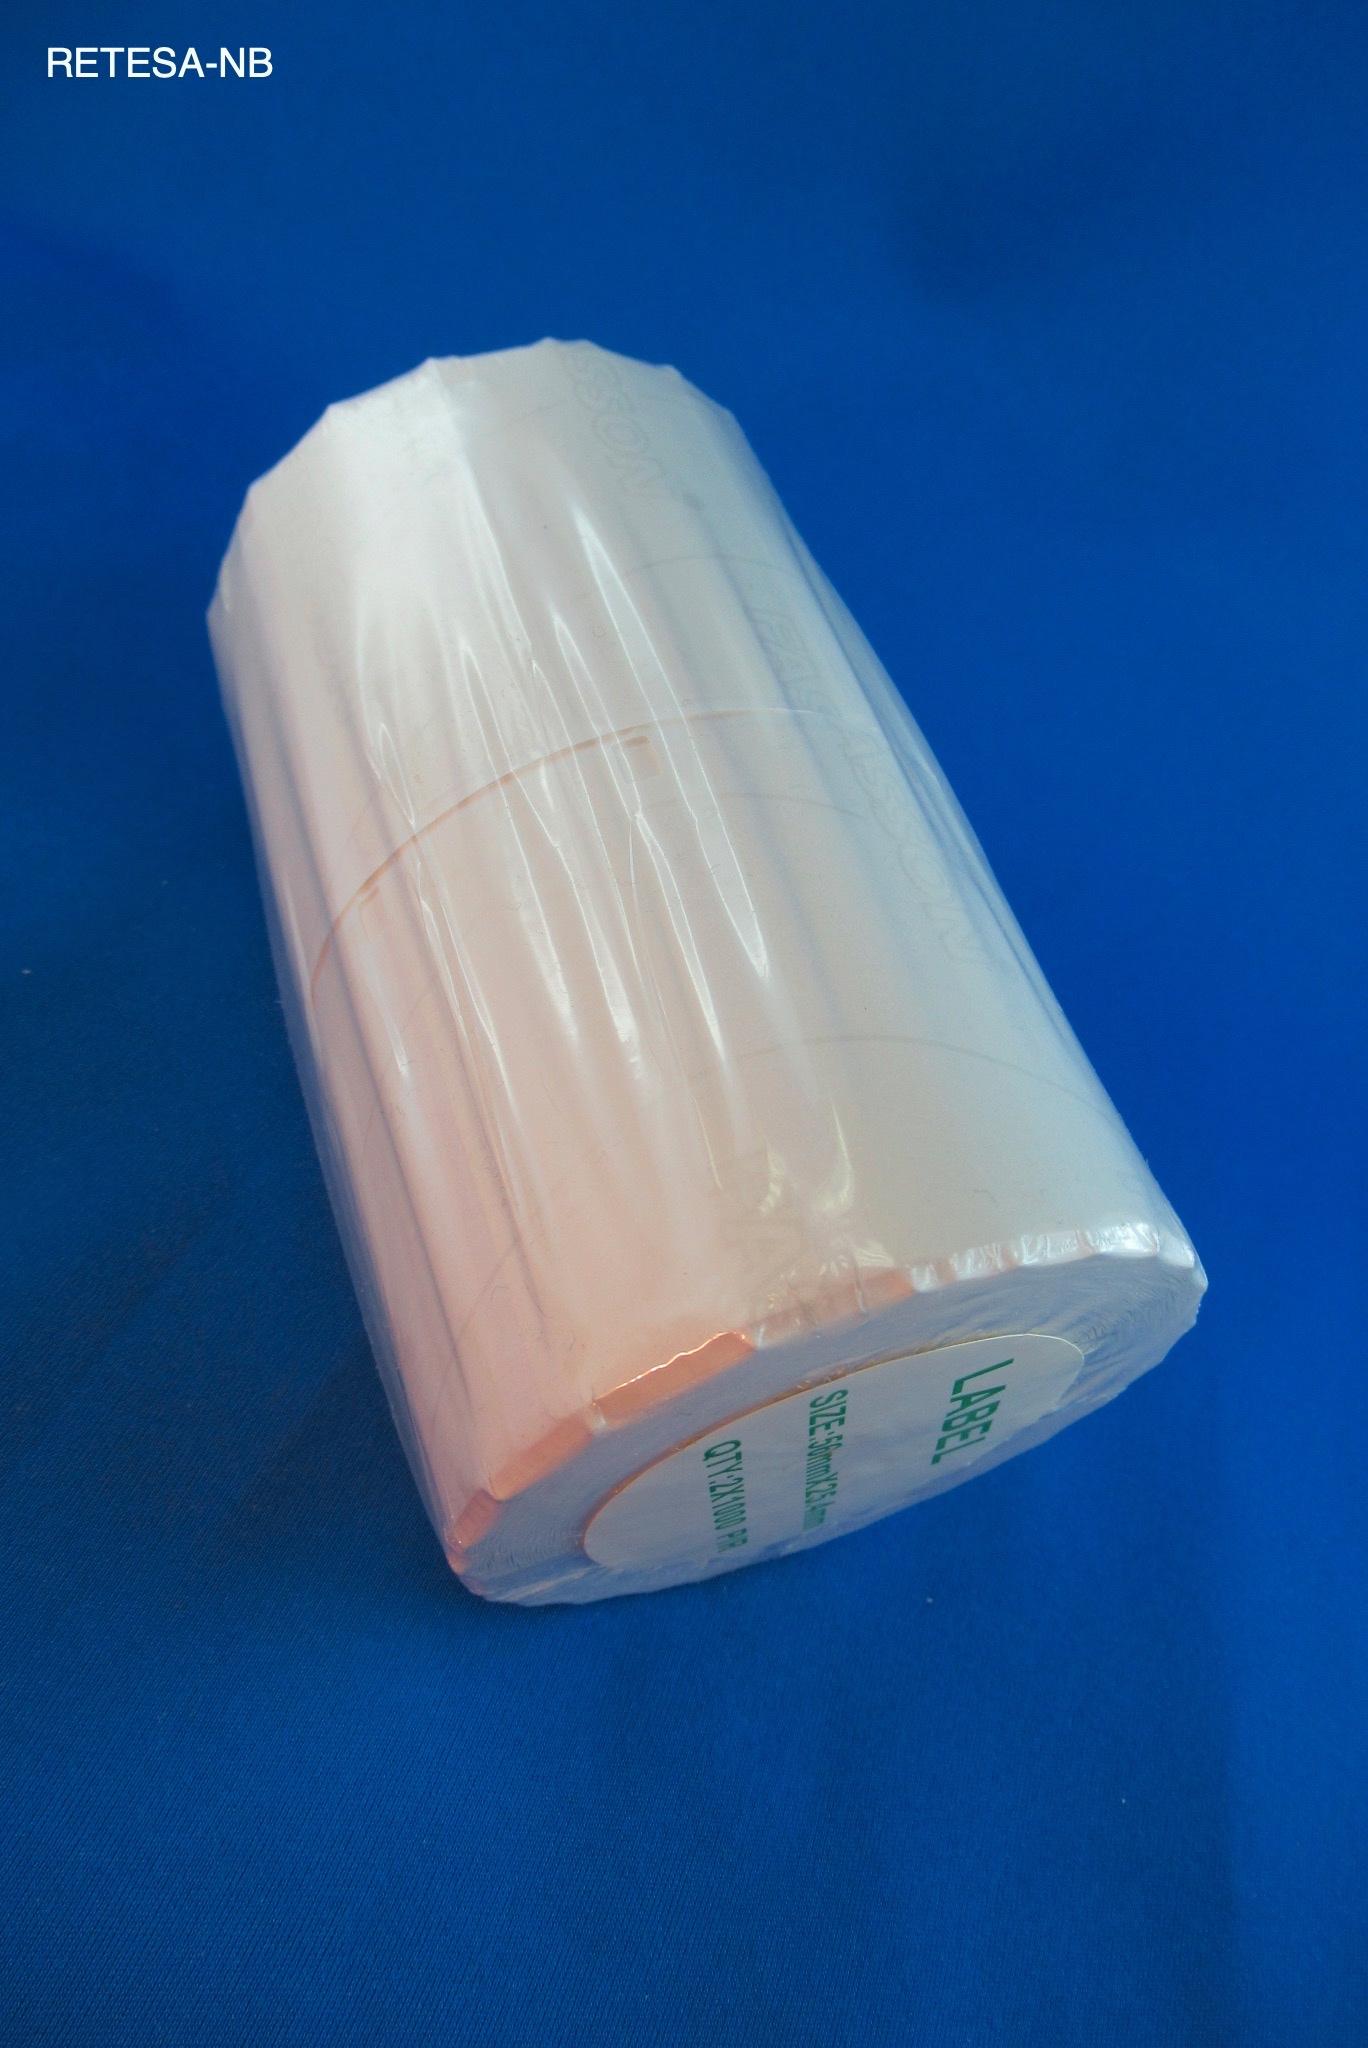 Thermo-Klebe-Etiketten 56*25.4mm (1.000) für EPSON TM-L 60